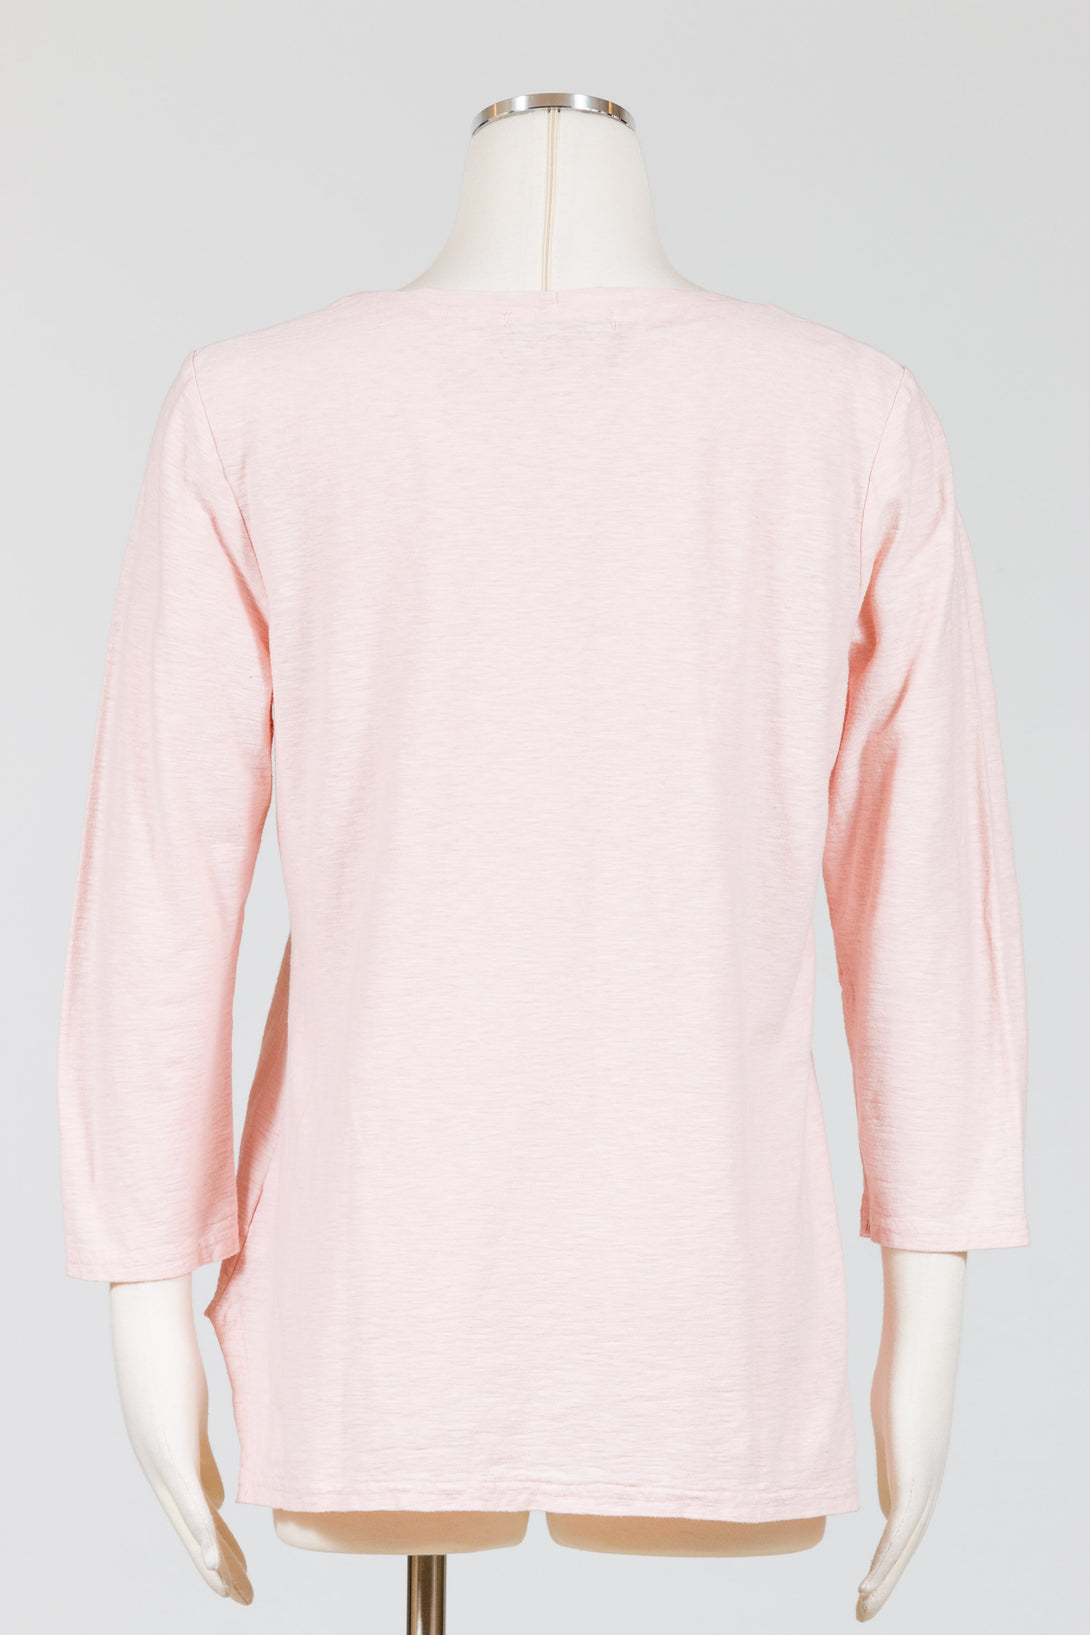 CutLoose-HiLo-Crop-Top-Cotton-Linen-Knit-Rosalie-Pink-Blush